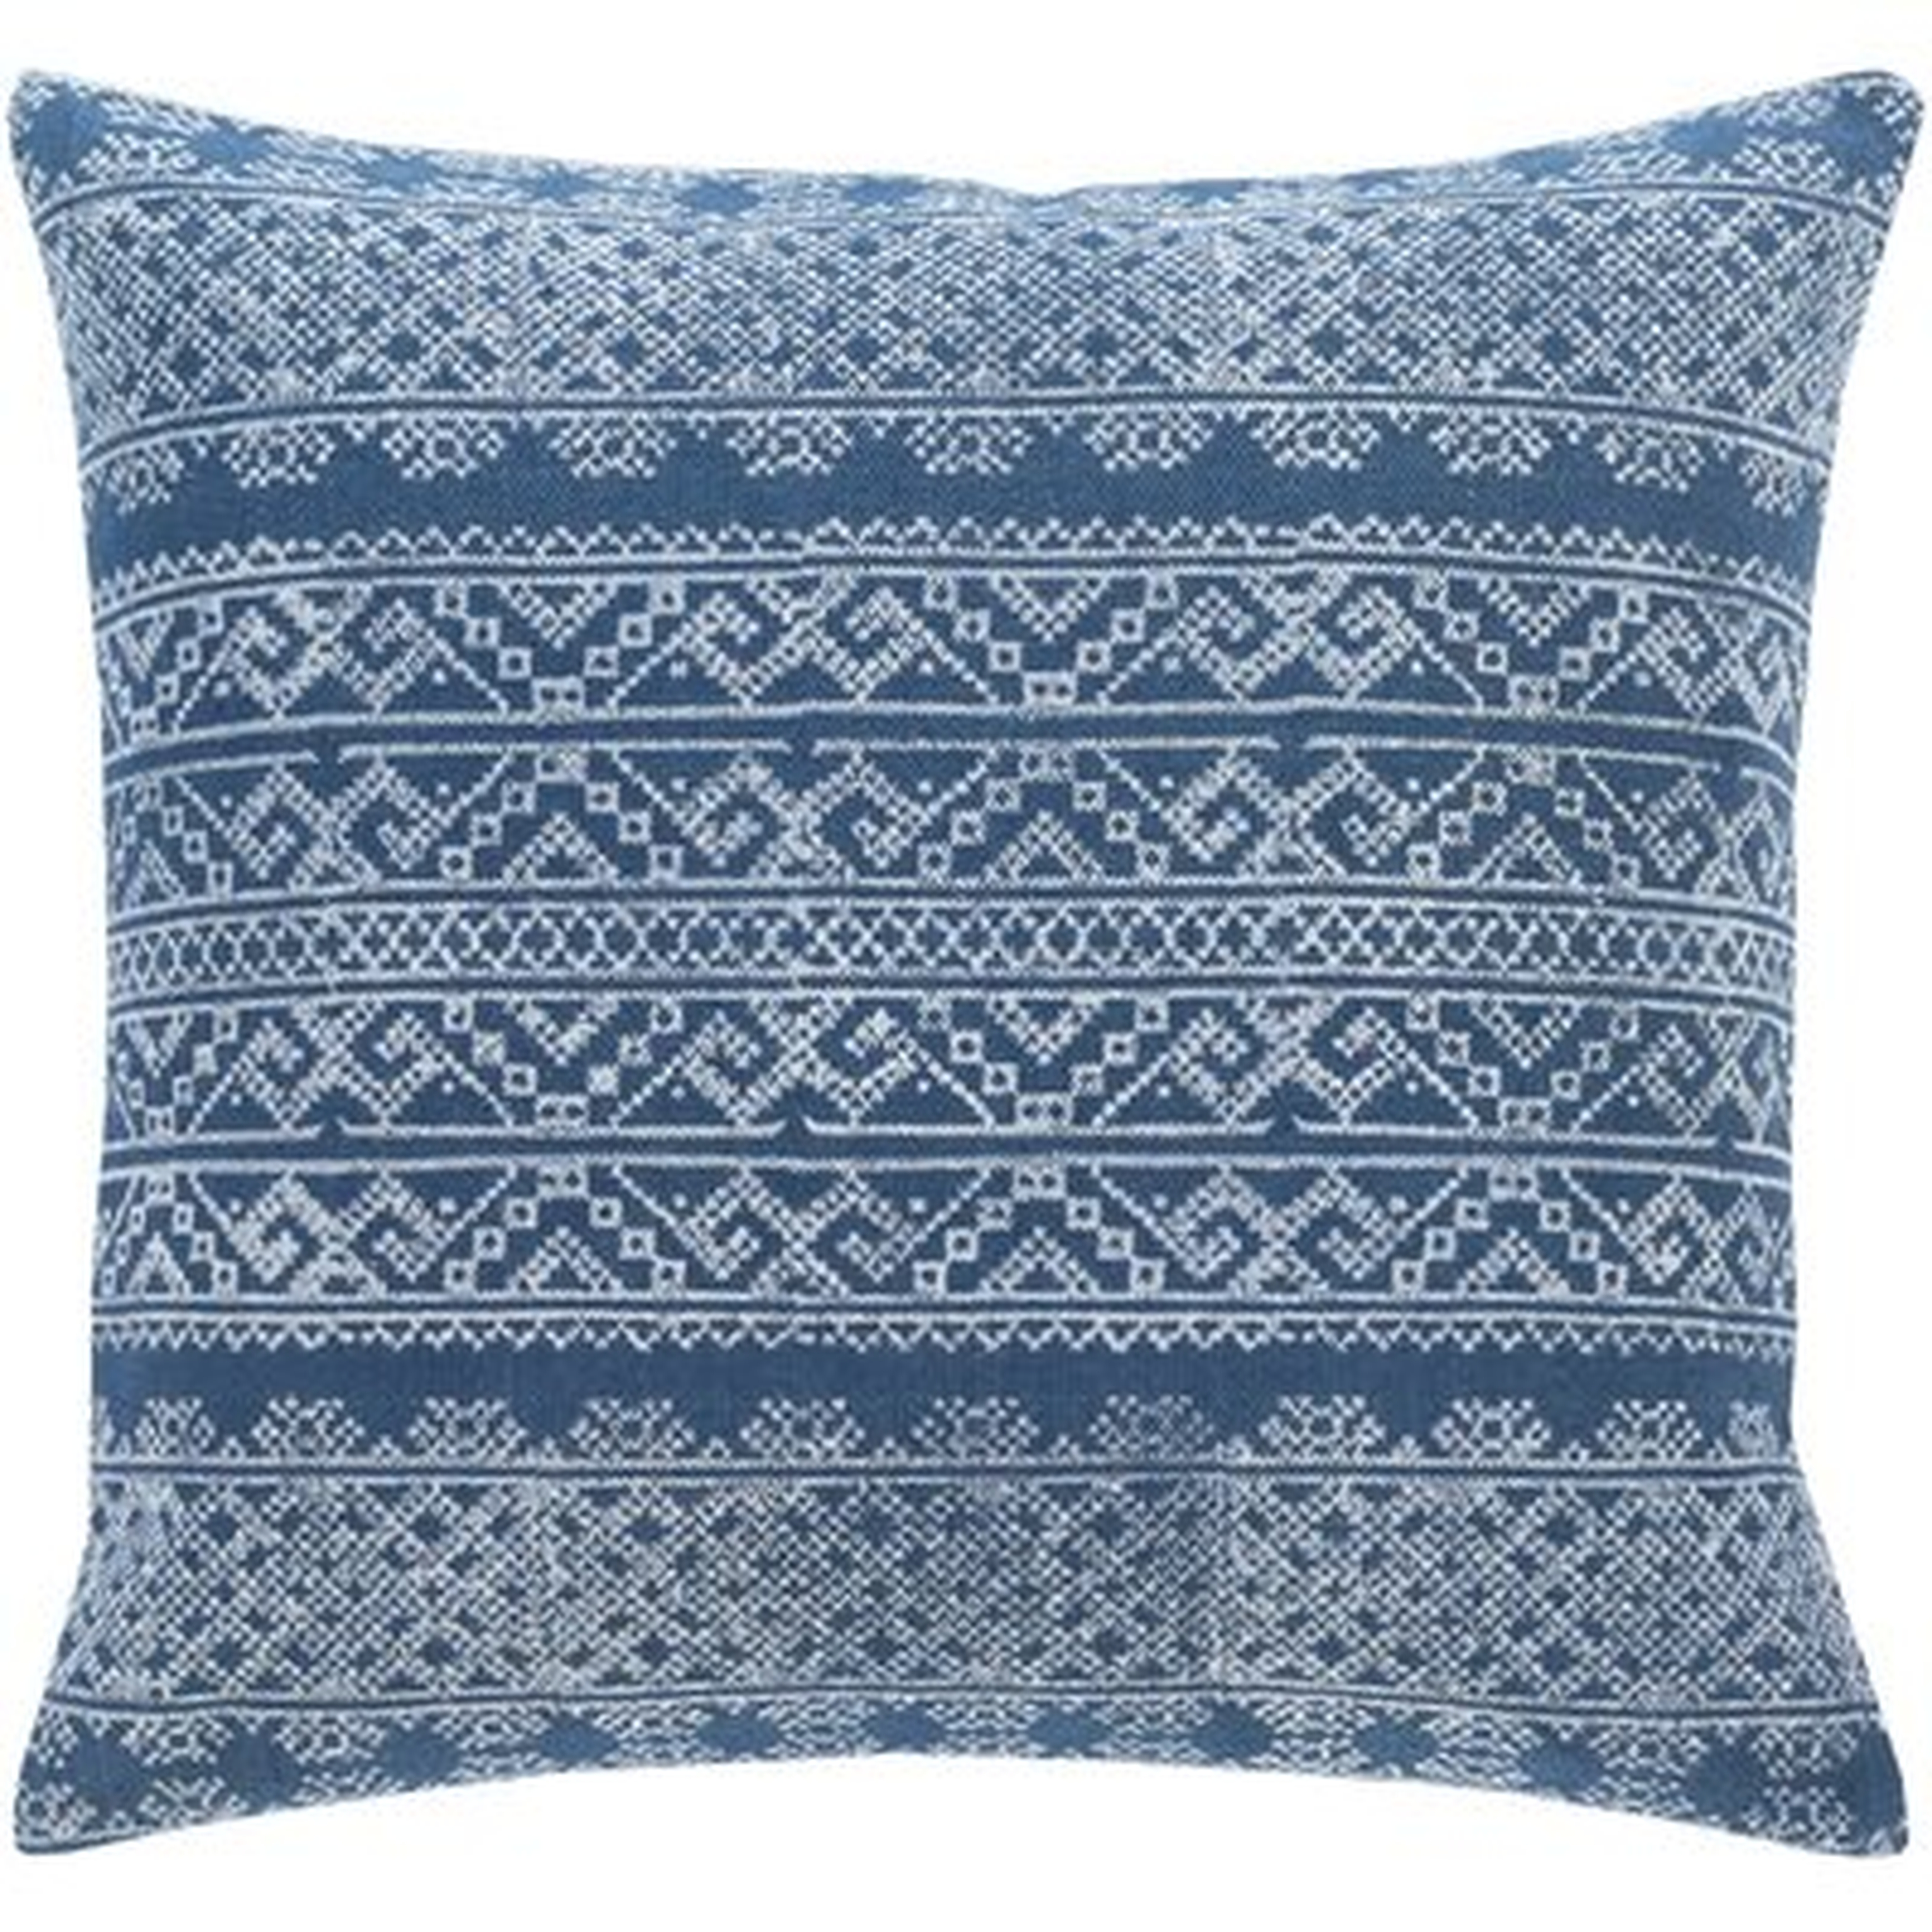 Ranier Bohemian Global Dark Blue Pillow  (polyester fill) - Wayfair